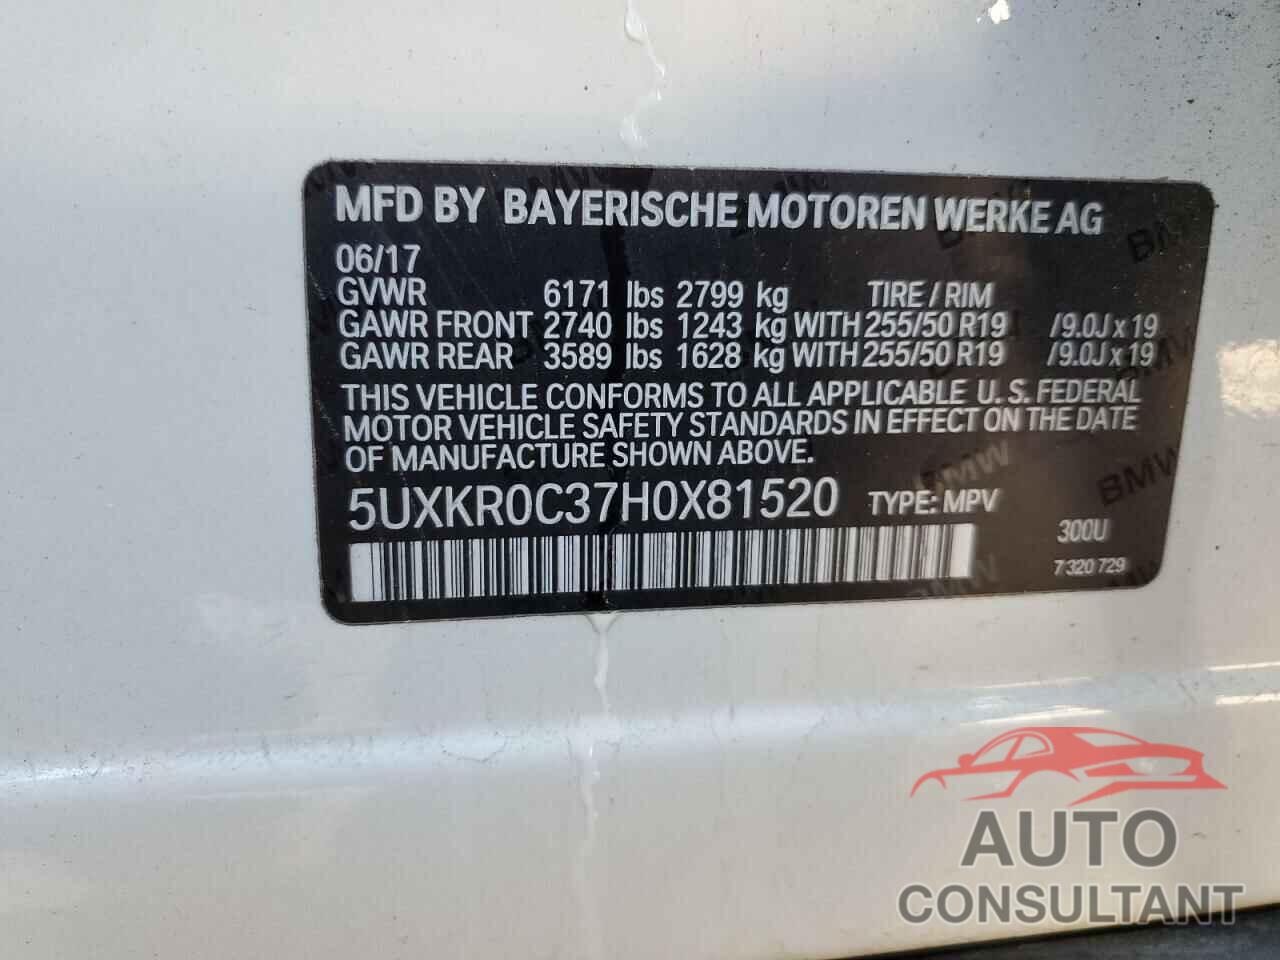 BMW X5 2017 - 5UXKR0C37H0X81520